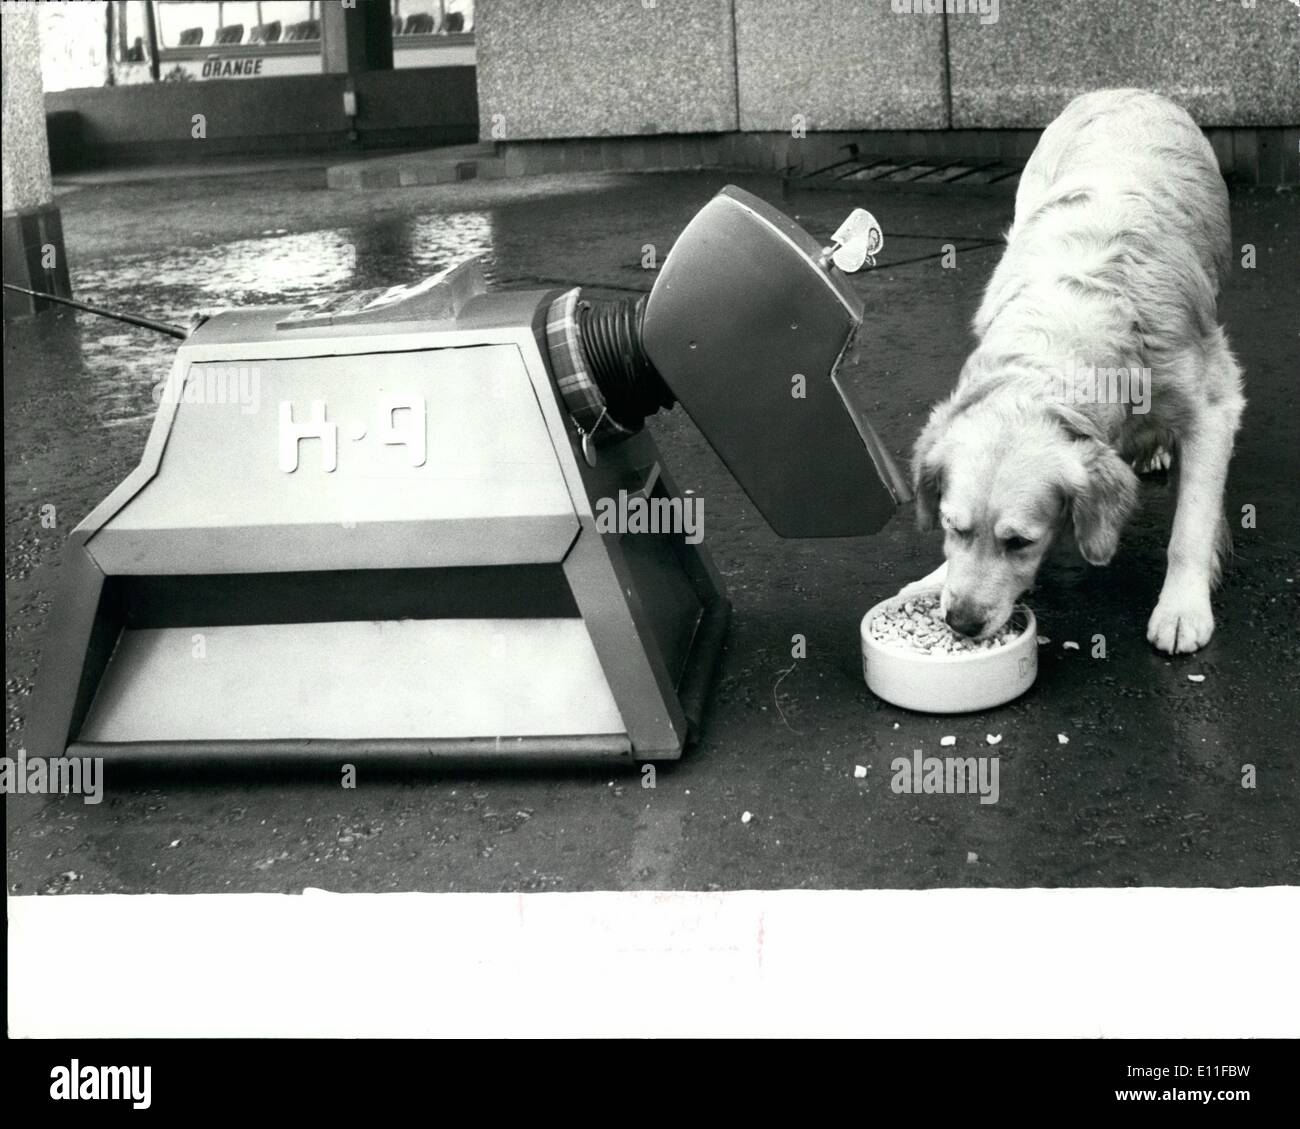 10 octobre 1977 - Crunch : Plat Chiens Robert et K9 Célébrez avec style. Spillers Winalot a célébré son cinquantième anniversaire, hier ( vendredi ) pour le son de bouchons de champagne sauter et deux chiens de la Grande-Bretagne de grignotage super plus gros biscuit canin. La pétillante à Spillers' direction a annoncé un plan de promotion spéciale pour le Jubilé d'Winalot lors d'une conférence de presse sur une période péniche amarrée à Londres, Katherine's Dock. Les plans de consommation comprend une compétition avec quatre voitures Ford Fiesta d'or parmi les prix, et le lancement de la publicité TV la semaine prochaine Banque D'Images